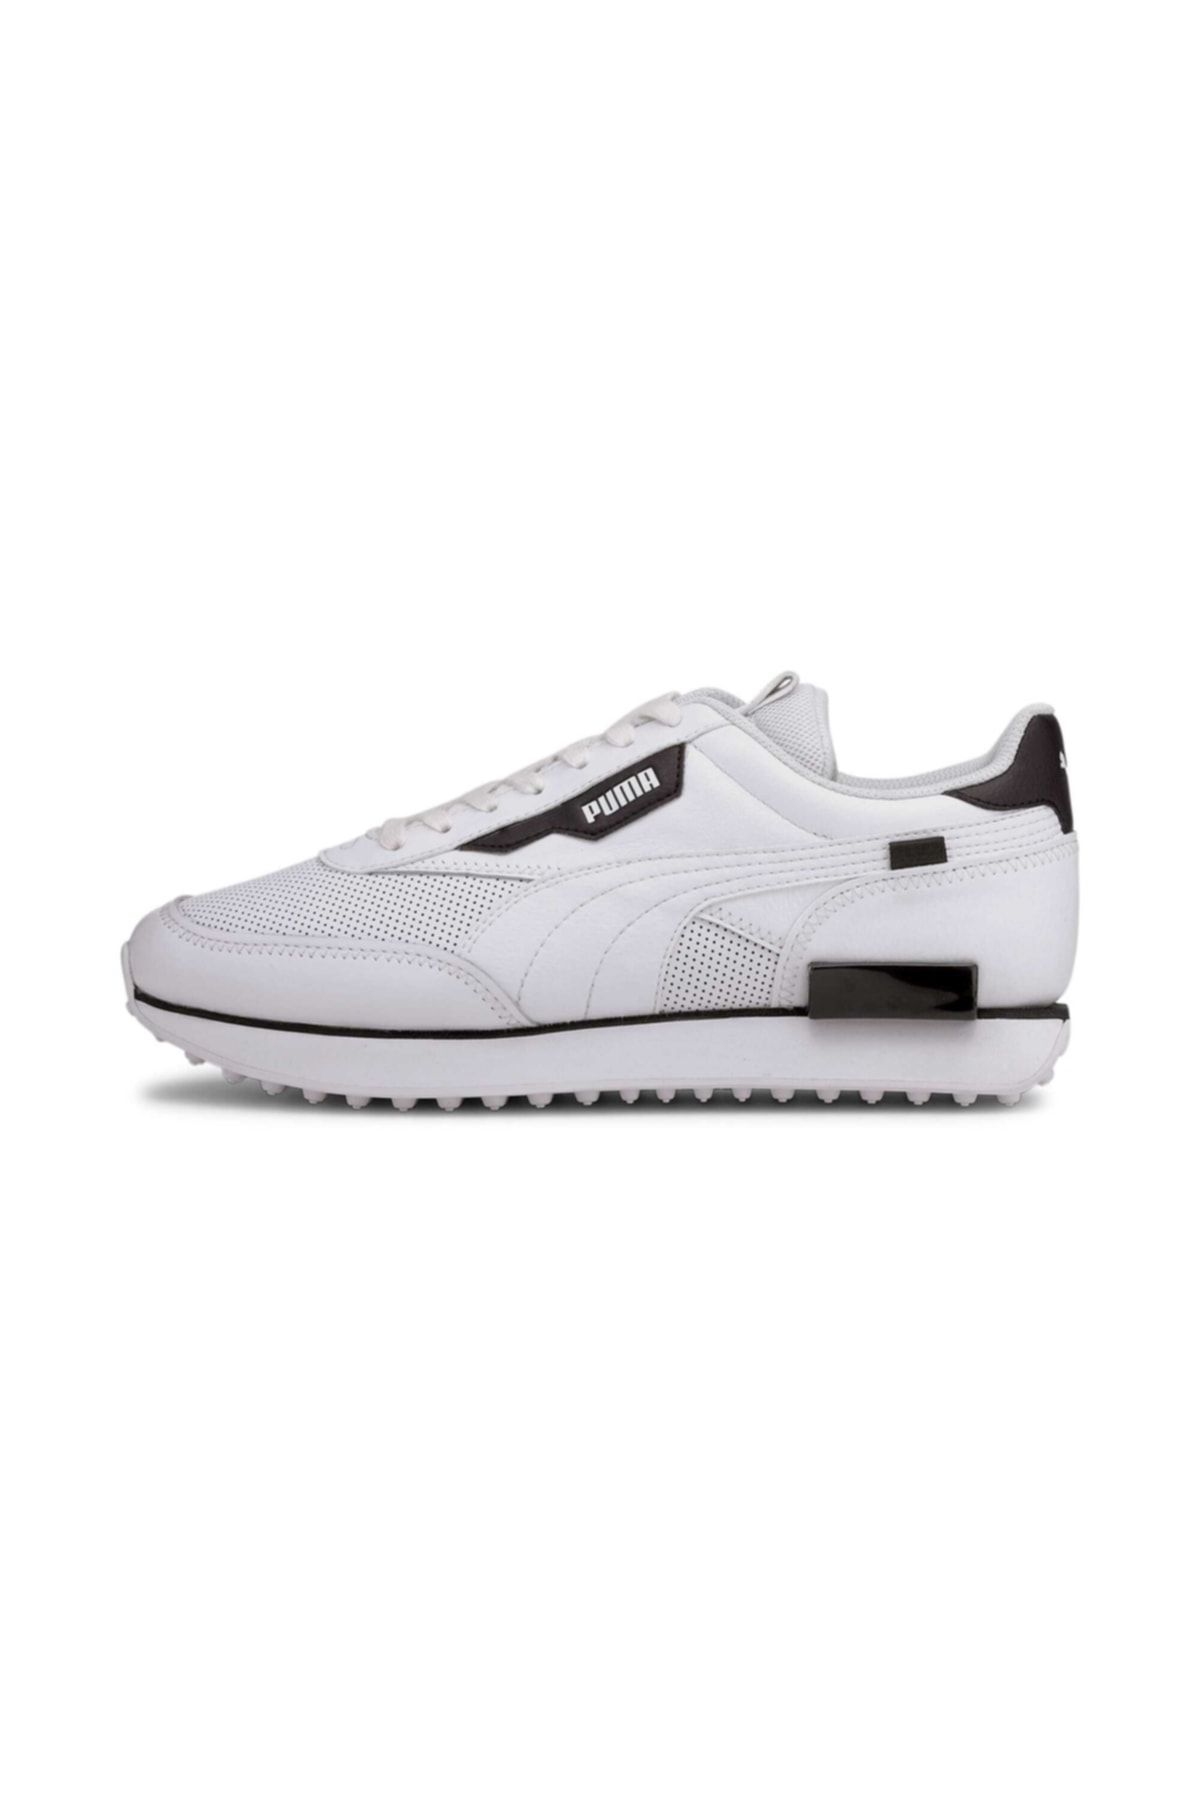 Puma Unisex Beyaz Spor Ayakkabı